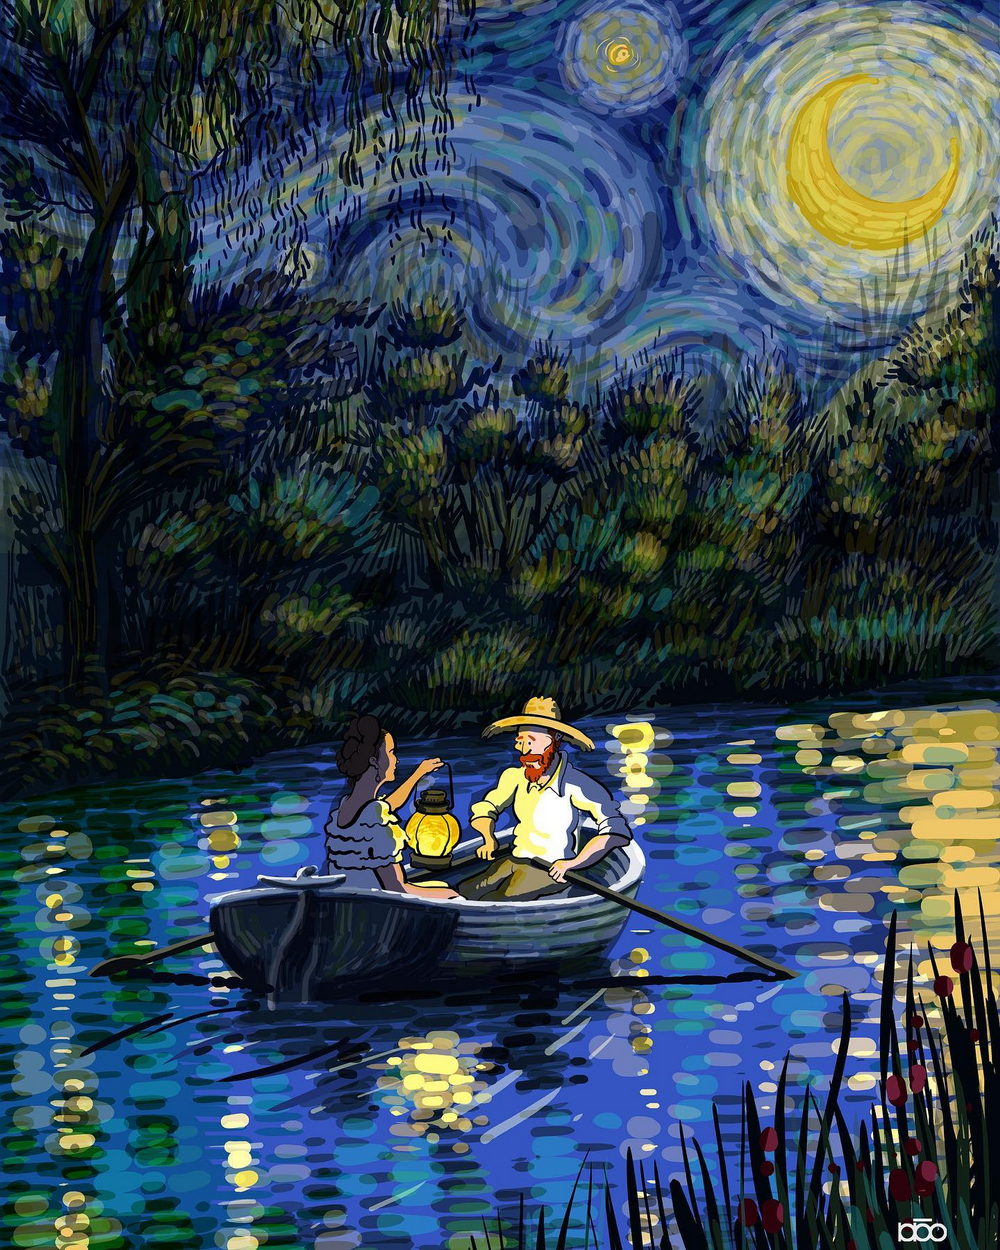 Vida do artista Vincent Van Gogh em seu próprio estilo de arte